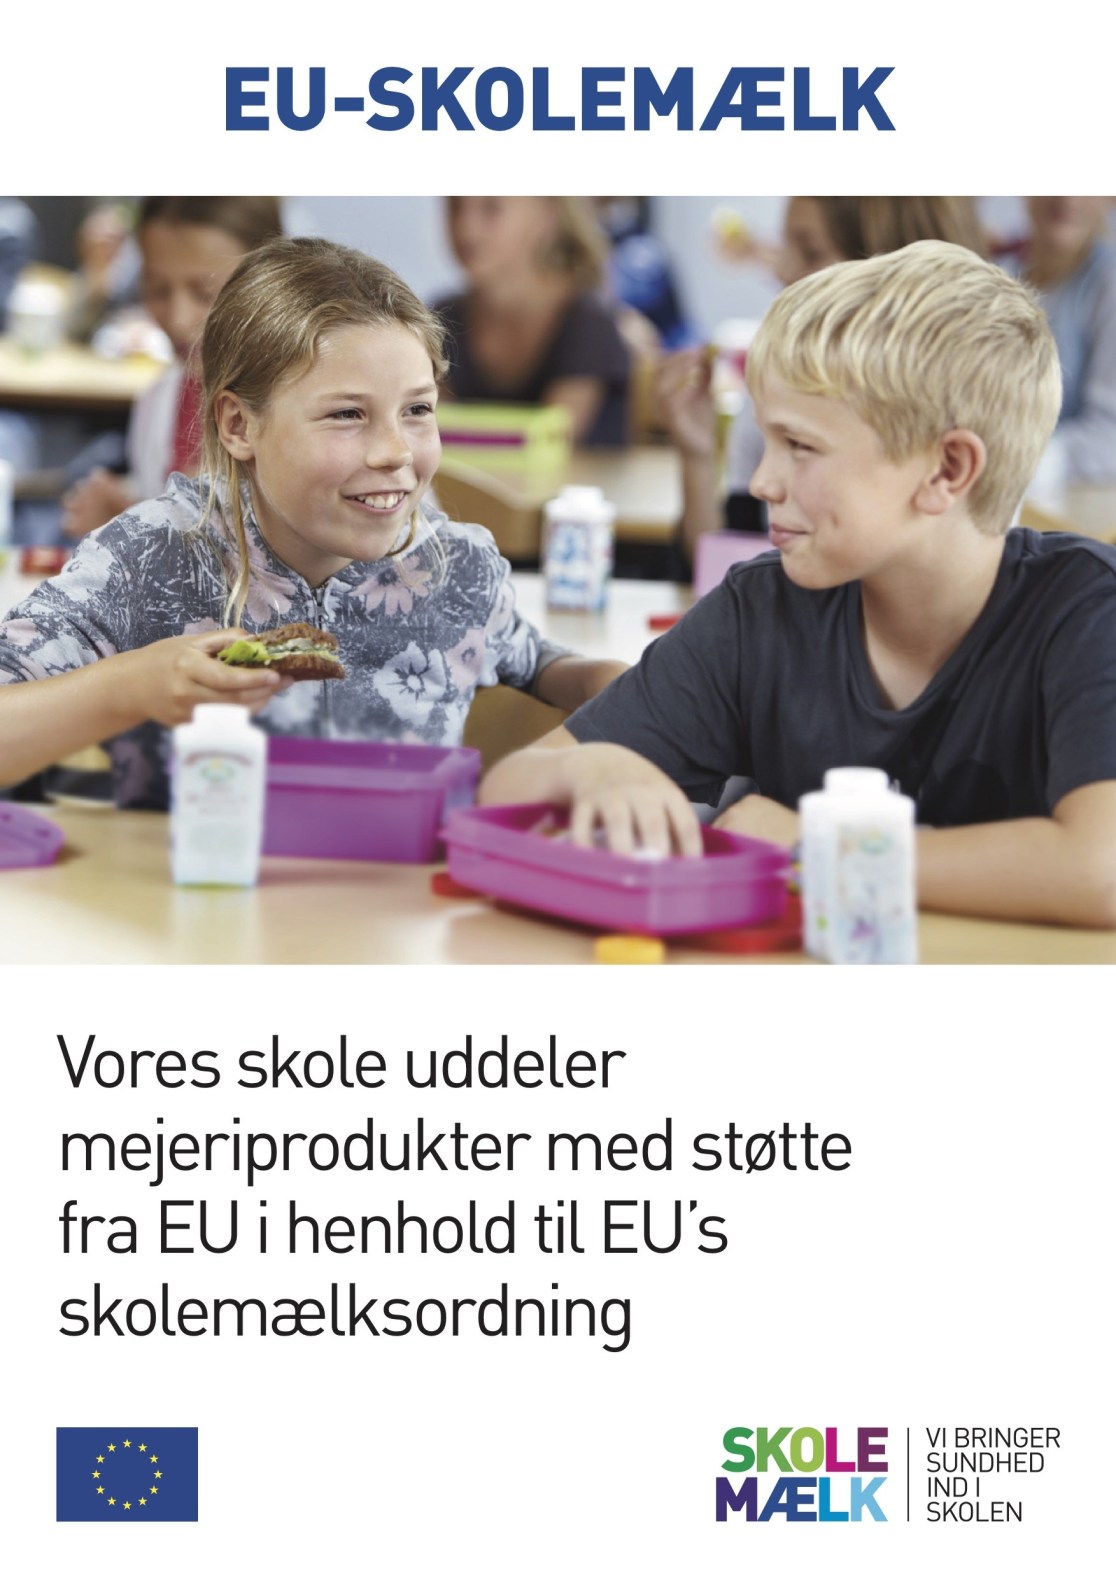 Plakat for skolemælk, indeholder teksten: EU-skolemælk, vores skole uddeler mejeriprodukter med støtte fra EU i henhold til EU's skolemælksordning